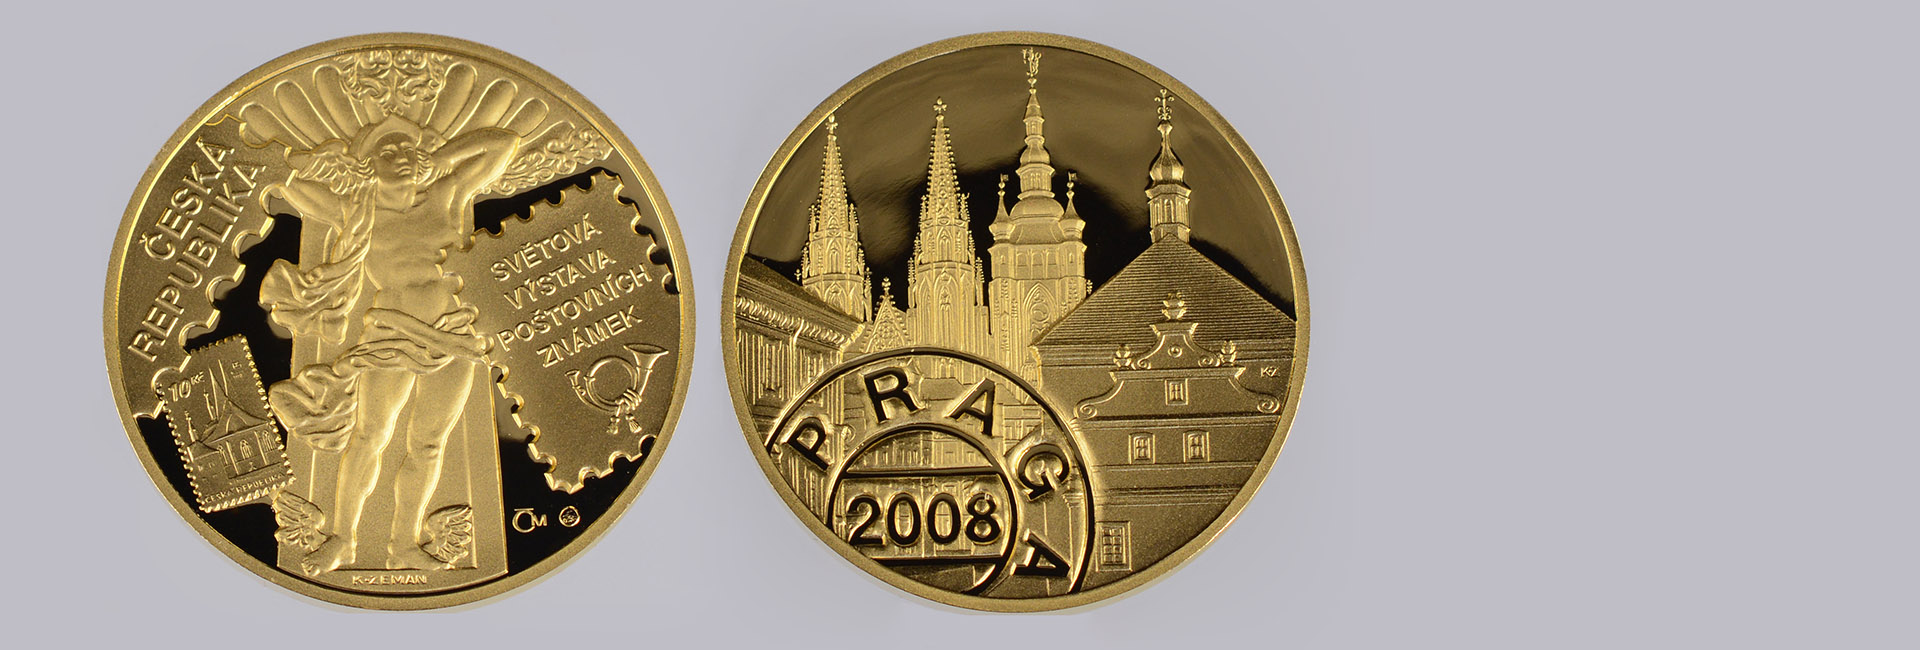 Goldmedaille PRAGA 2008|DAS AUFGELD BEI DIESER AUKTION NUR 5%| [Karel Zeman (1949)]